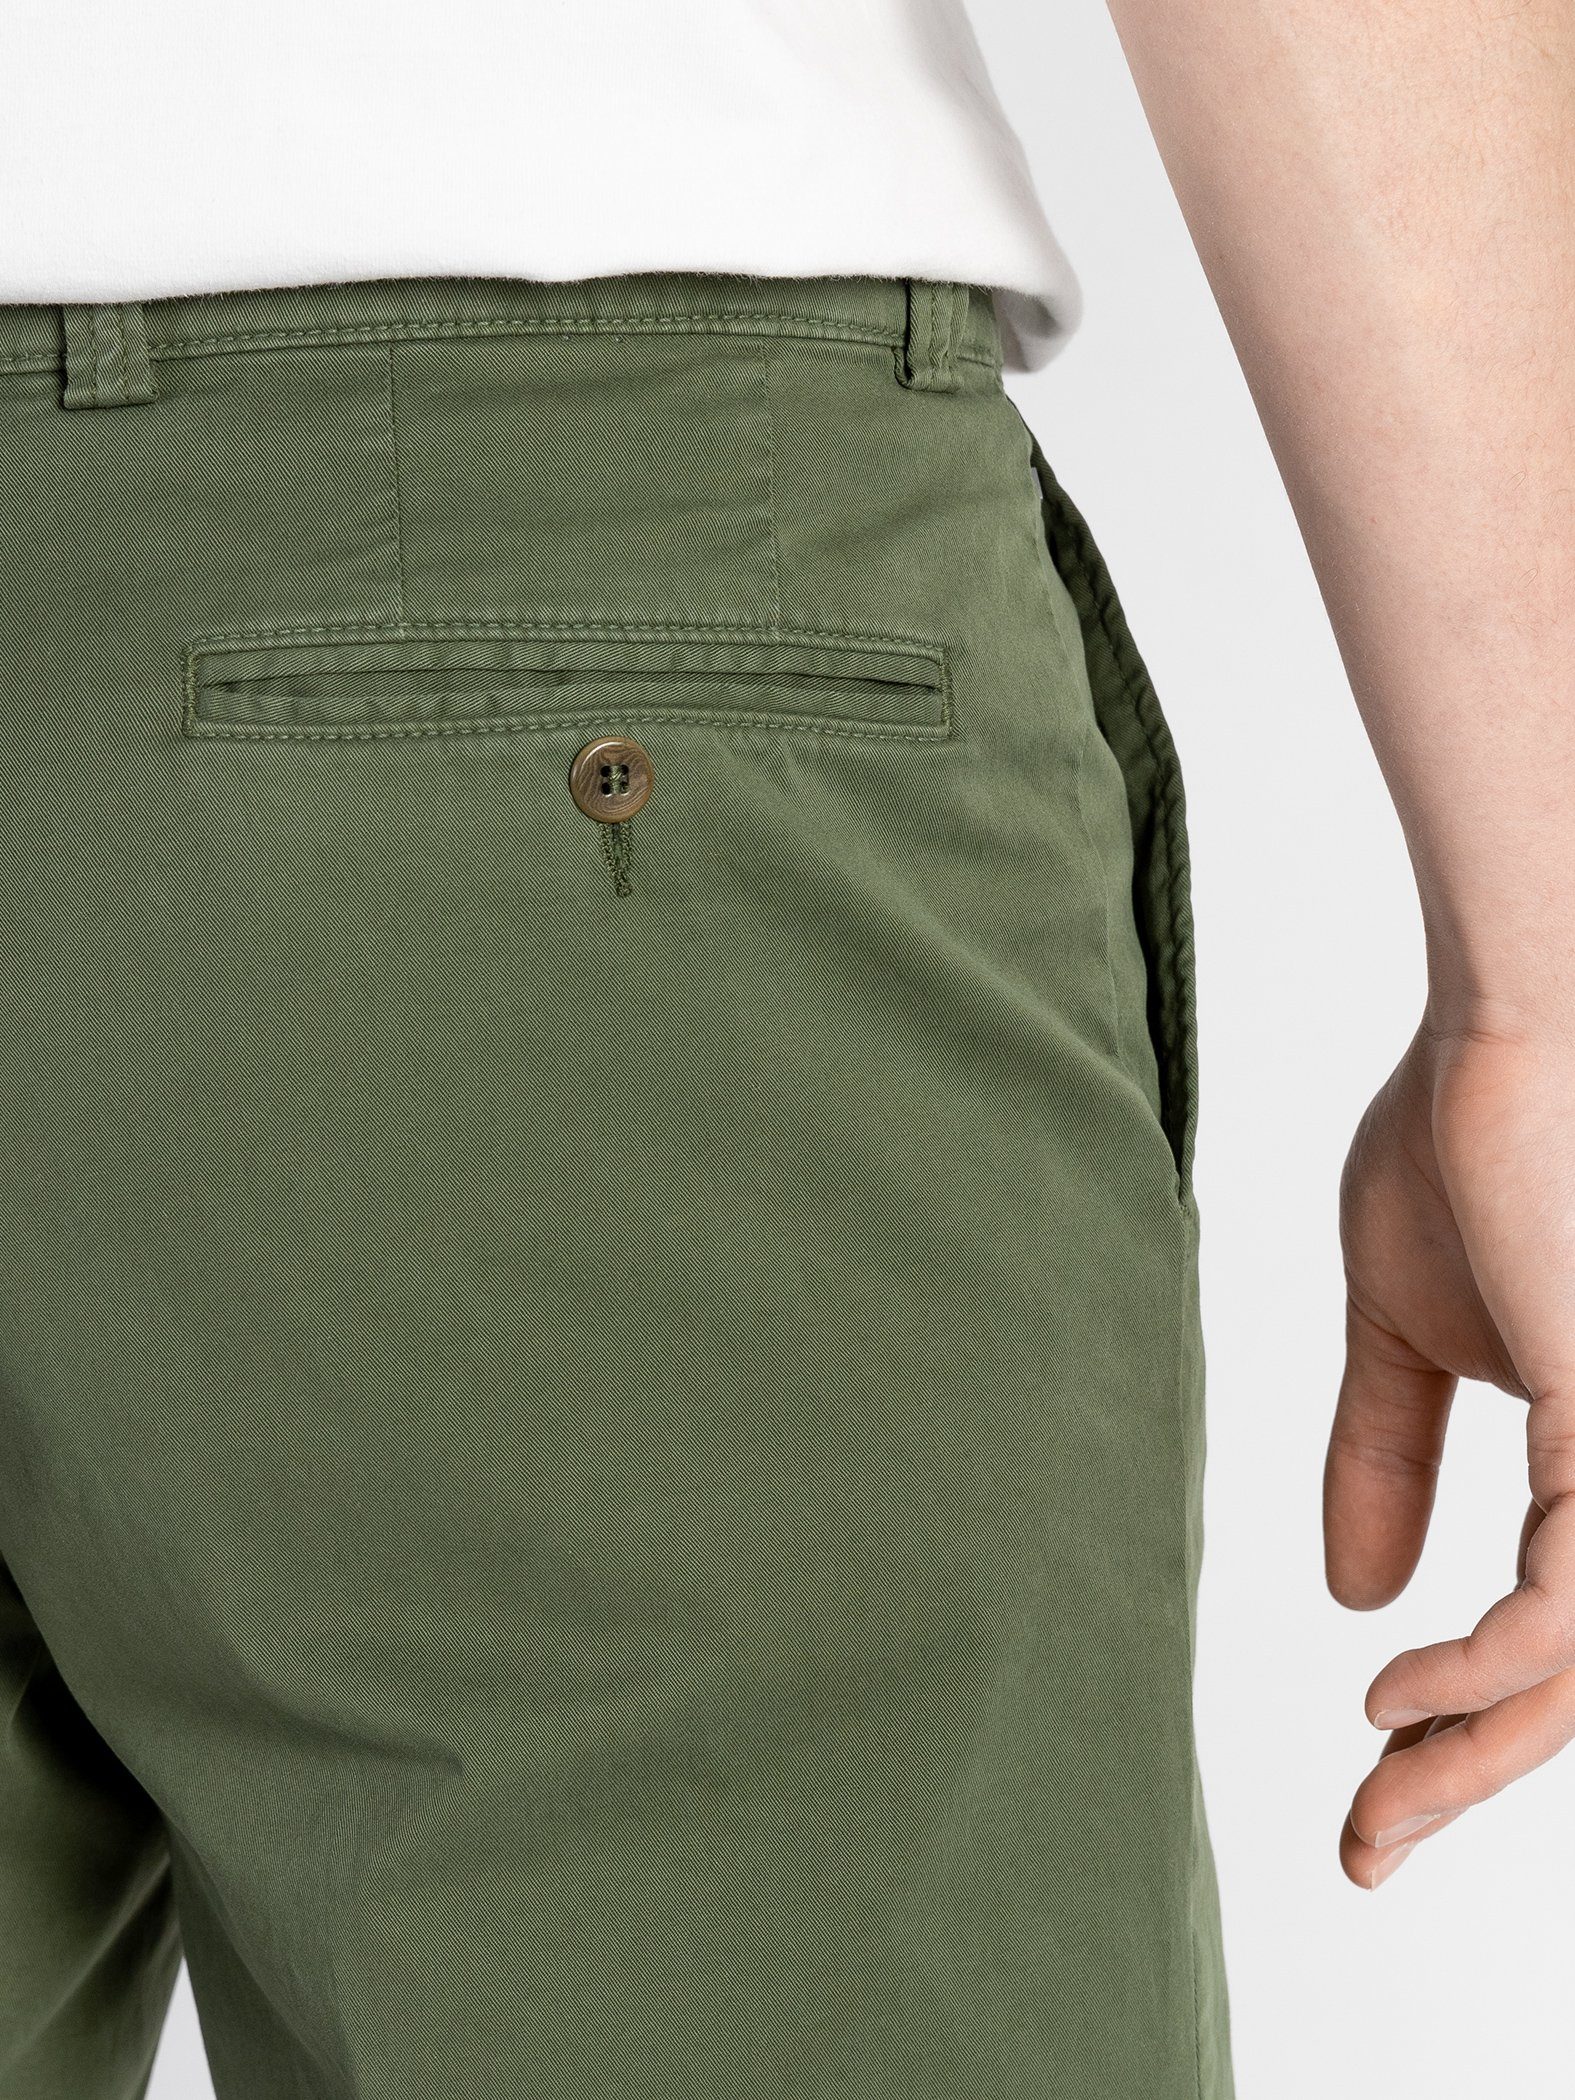 Grün Bund, TwoMates GOTS-zertifiziert Shorts Farbauswahl, Shorts mit elastischem